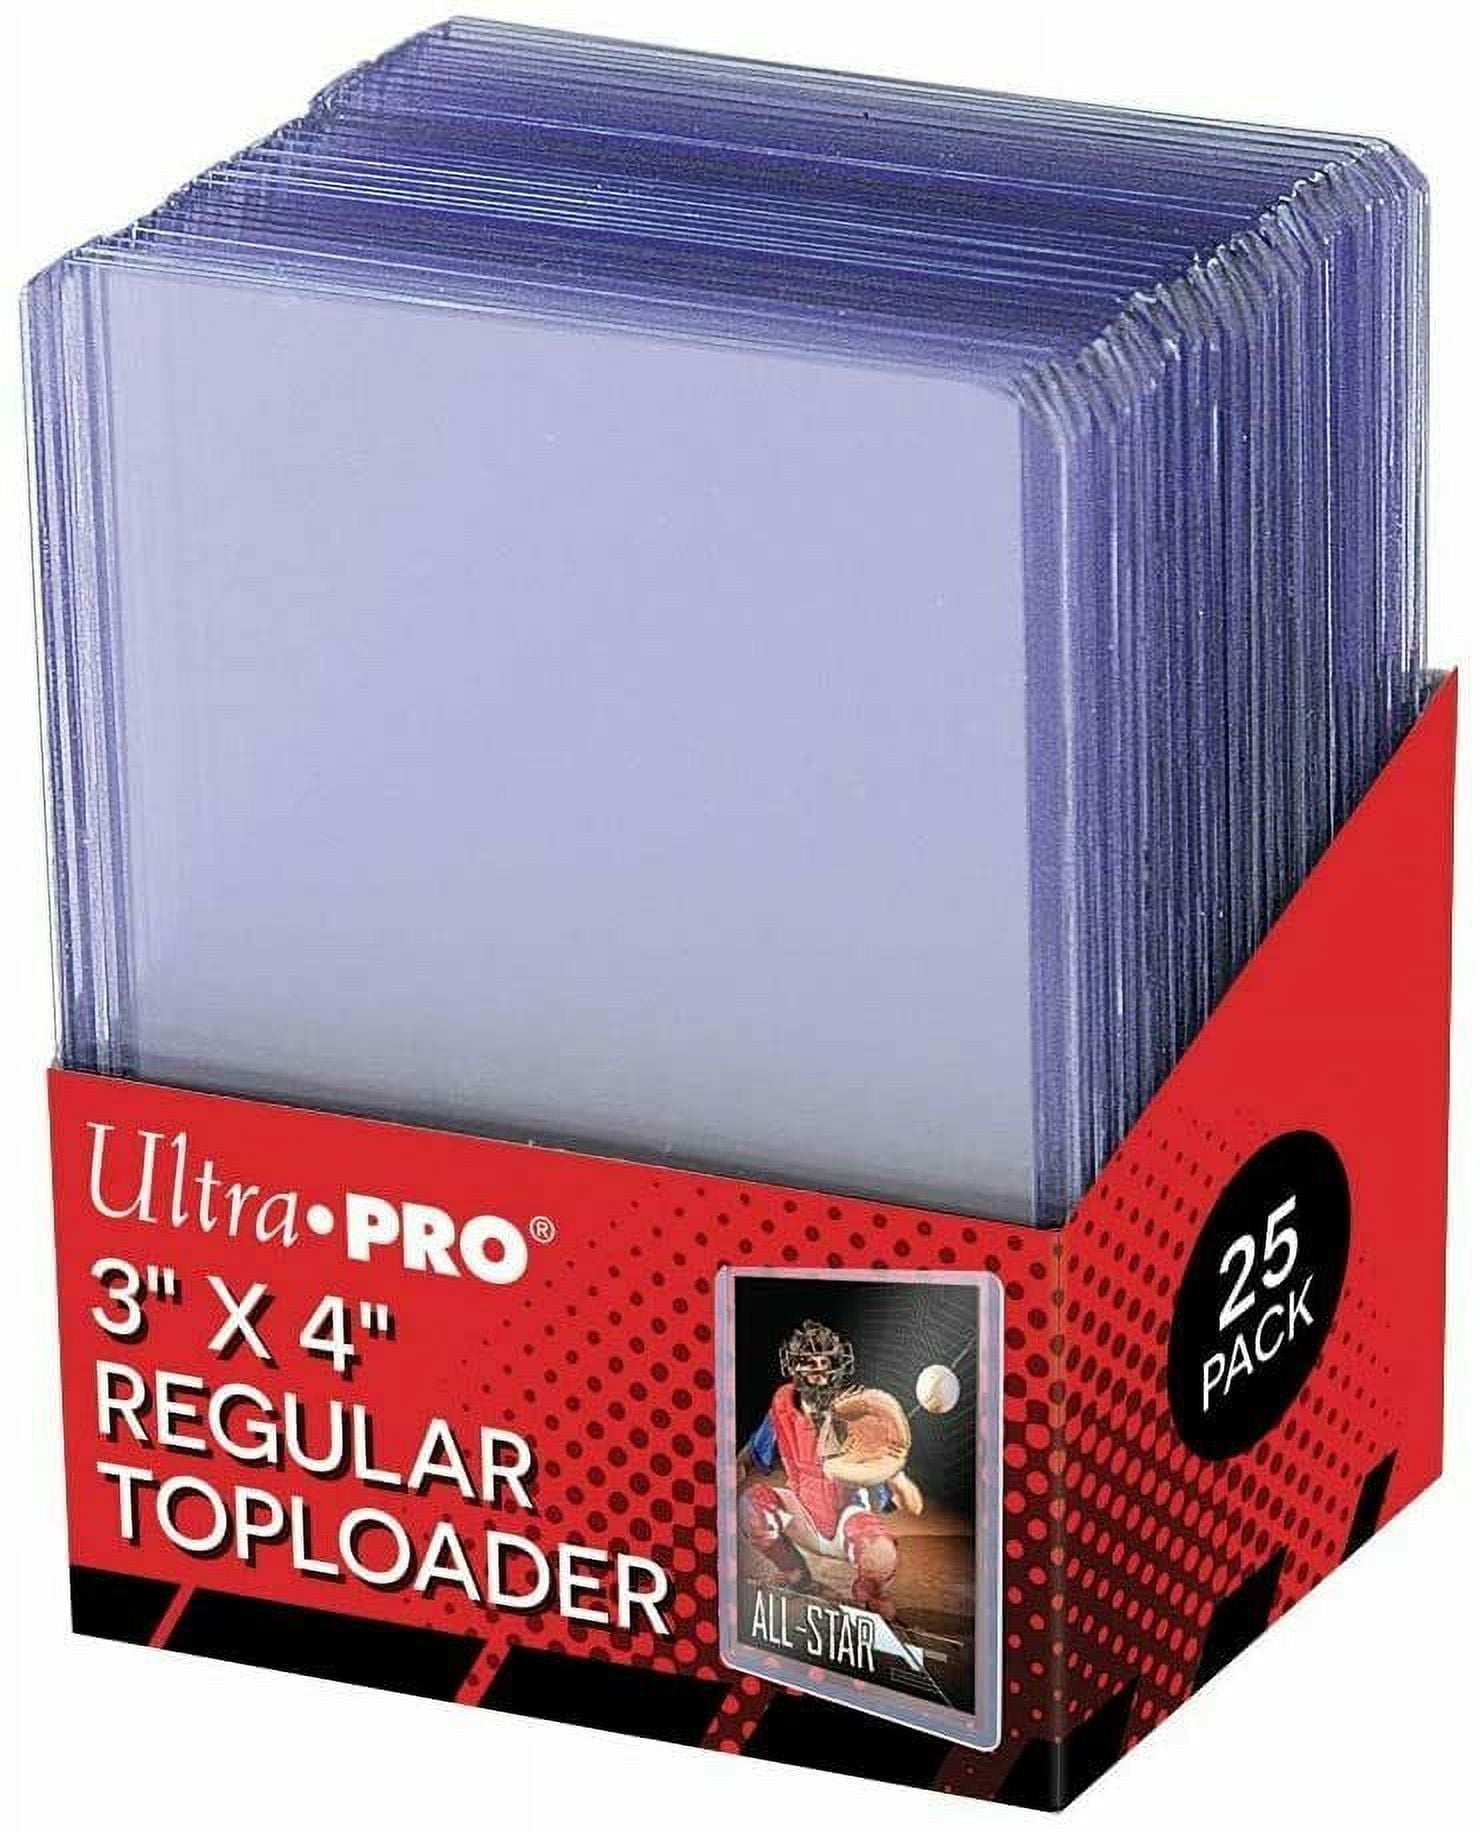 TopLoader Binder(Black) Holds 4 Pocket, 96 Cards, 12 Pages, Sports &  Pokemon TCG